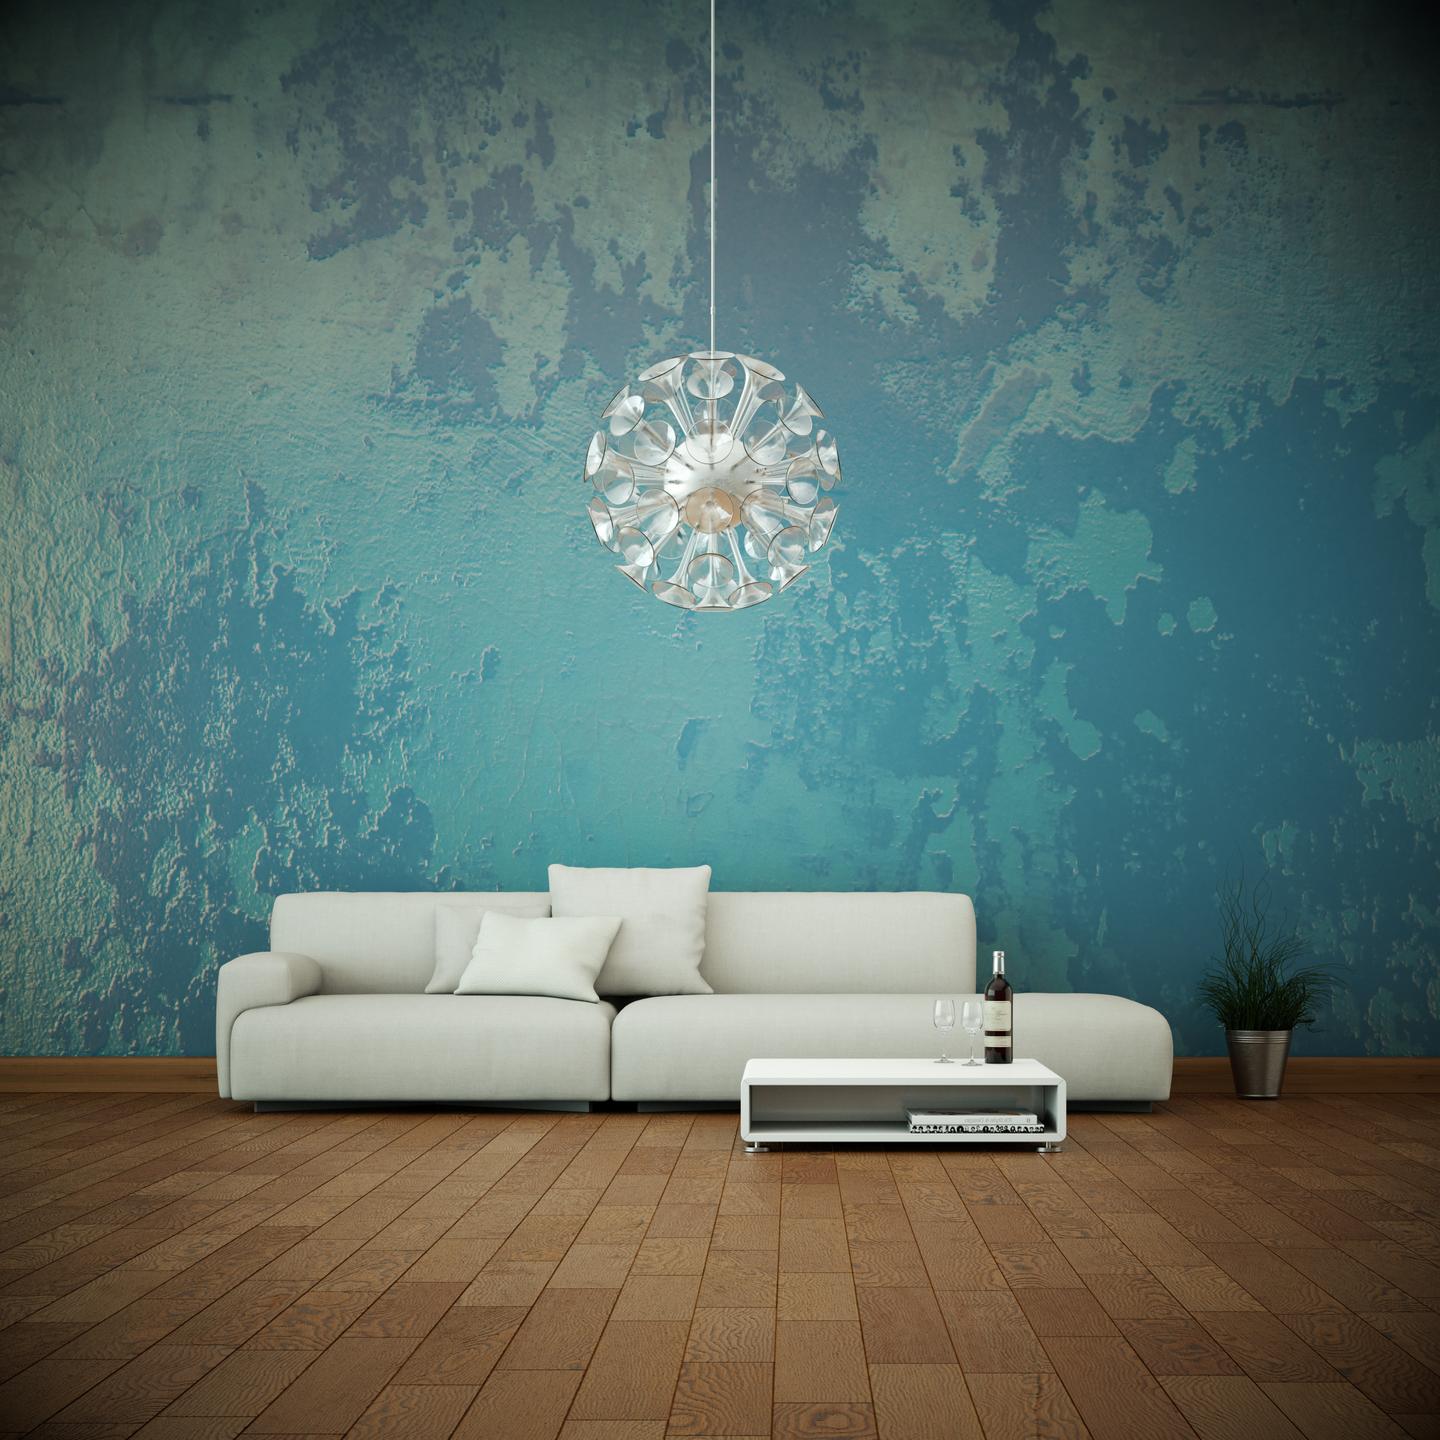 Wohnzimmer mit blauen Effekten an der Wand